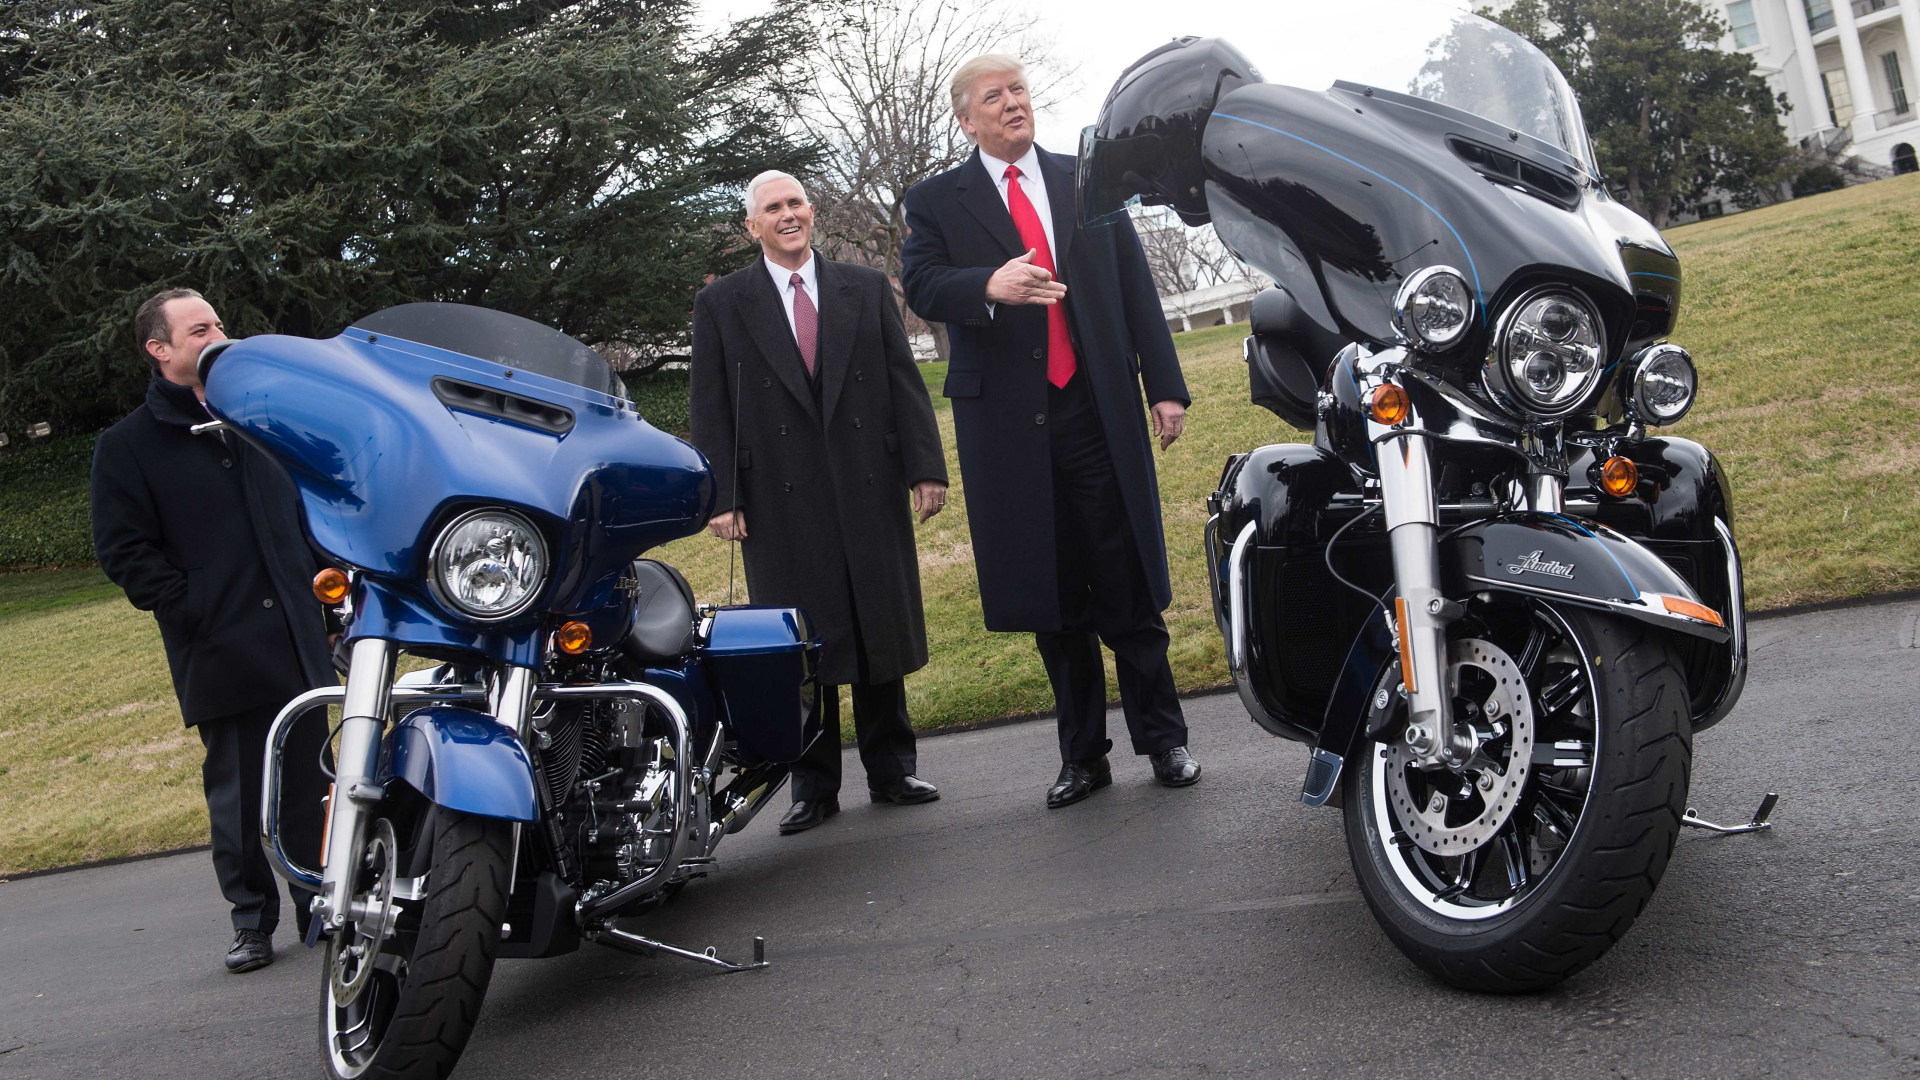 US-Präsident Trump und sein Vize Pence zwischen Harley-Maschinen in Washington | AFP